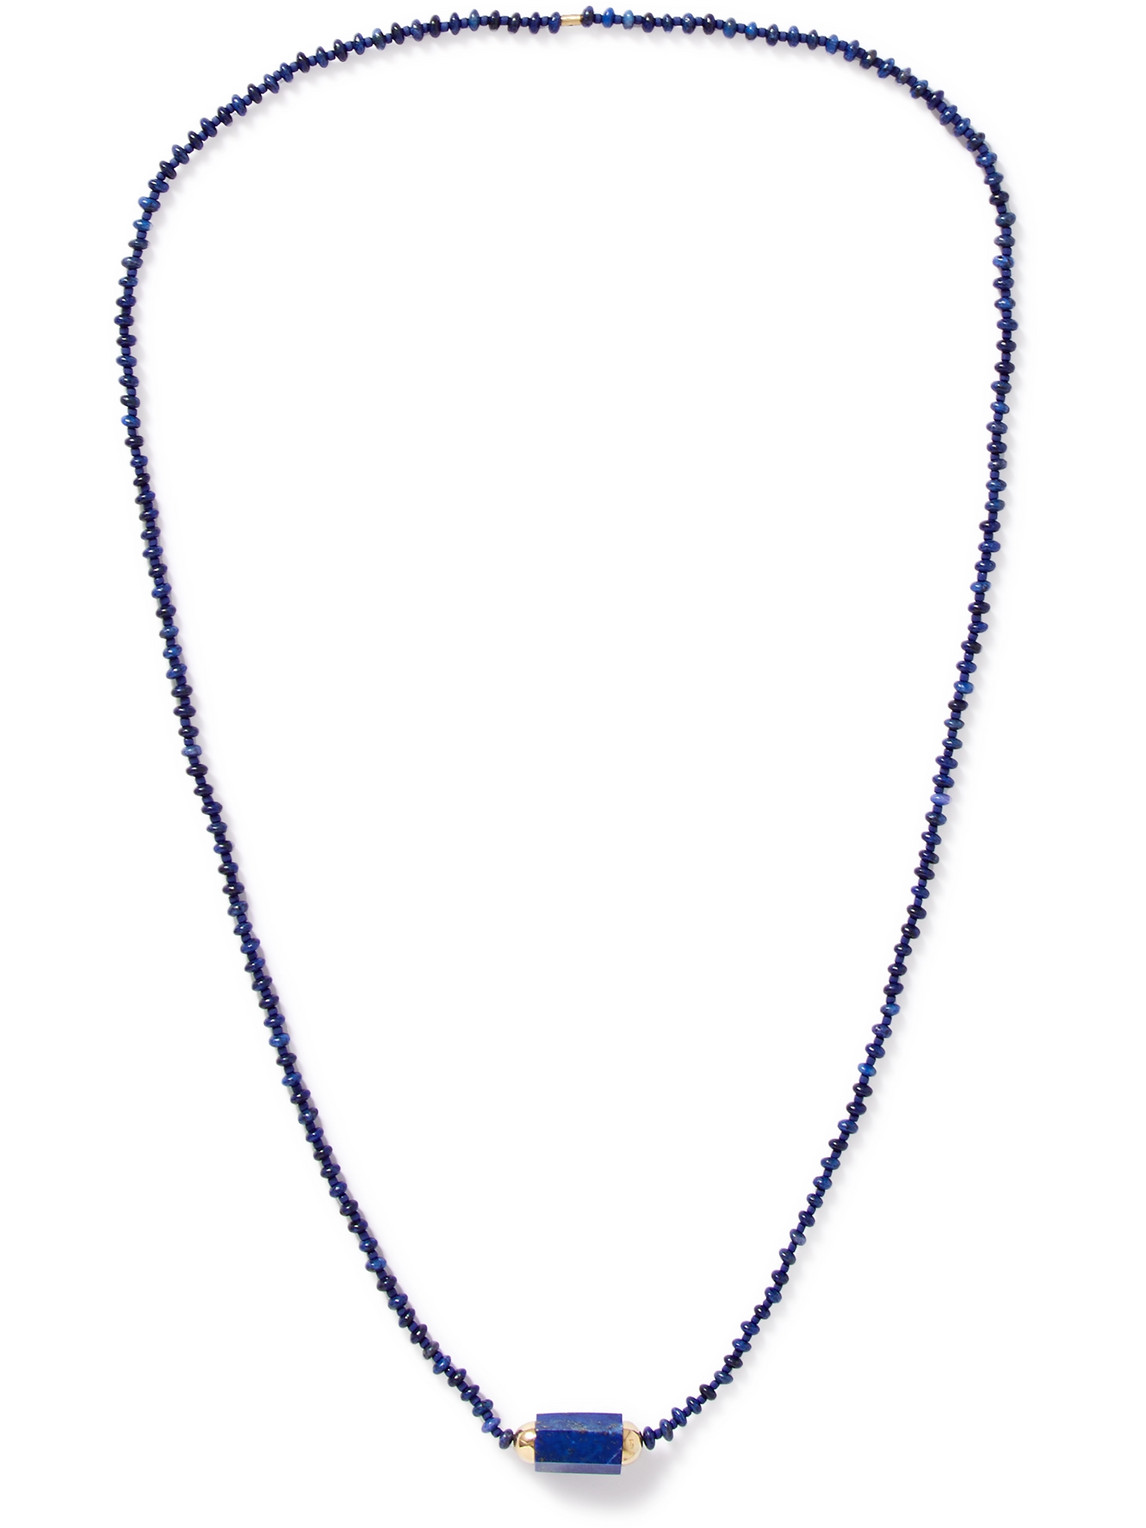 14-Karat Gold, Lapis Lazuli and Glass Beaded Necklace